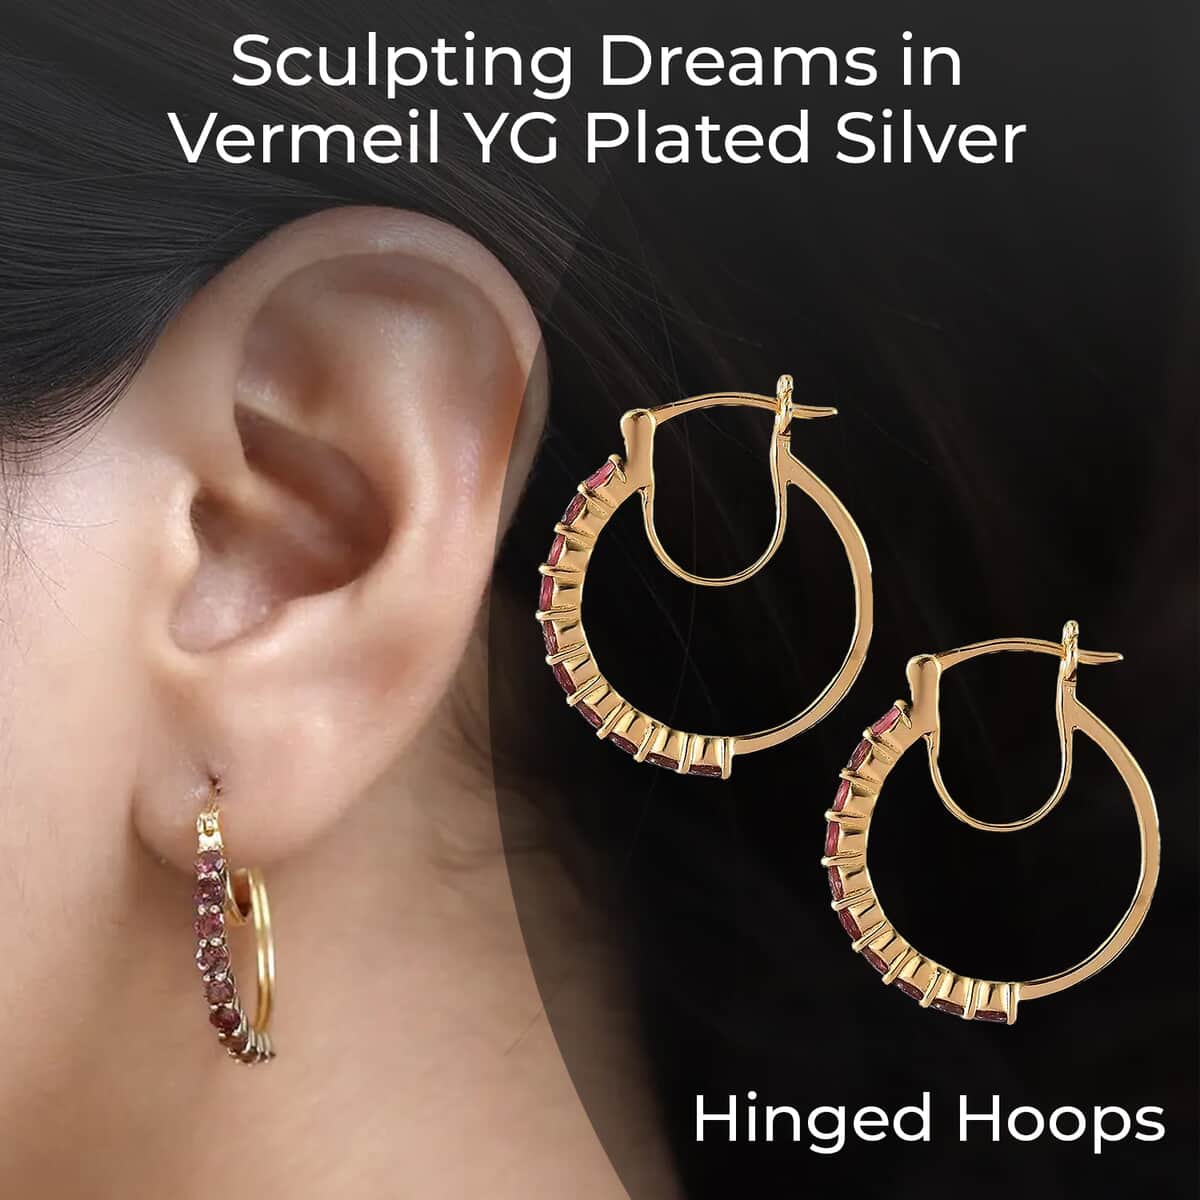 Ouro Fino Rubellite Hoop Earrings, Rubellite Earrings, Rubellite Hoops, Vermeil Yellow Gold Over Sterling Silver Earrings 1.85 ctw image number 2